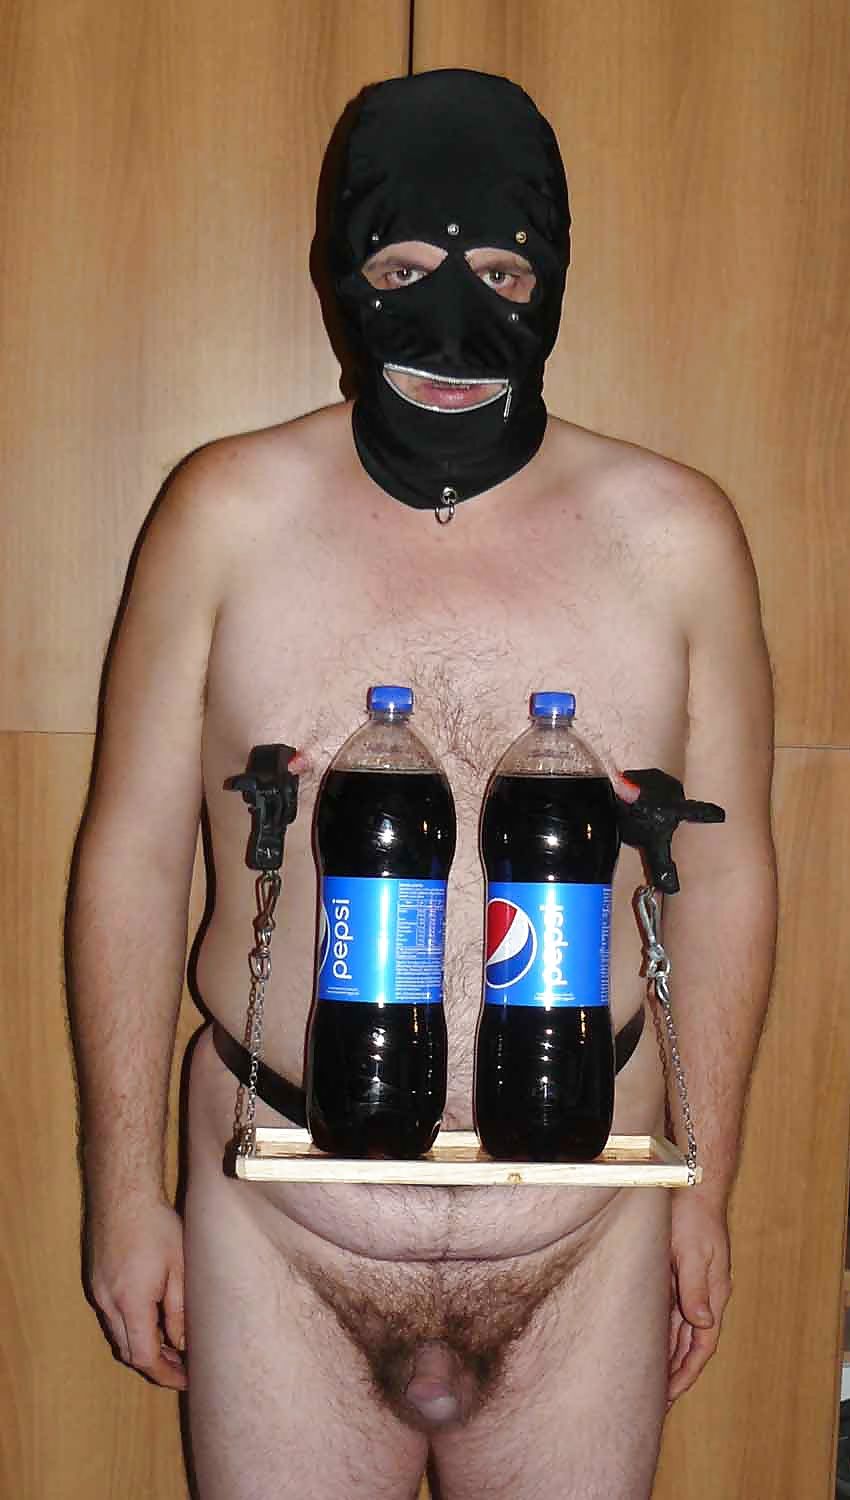 serving Pepsi #13